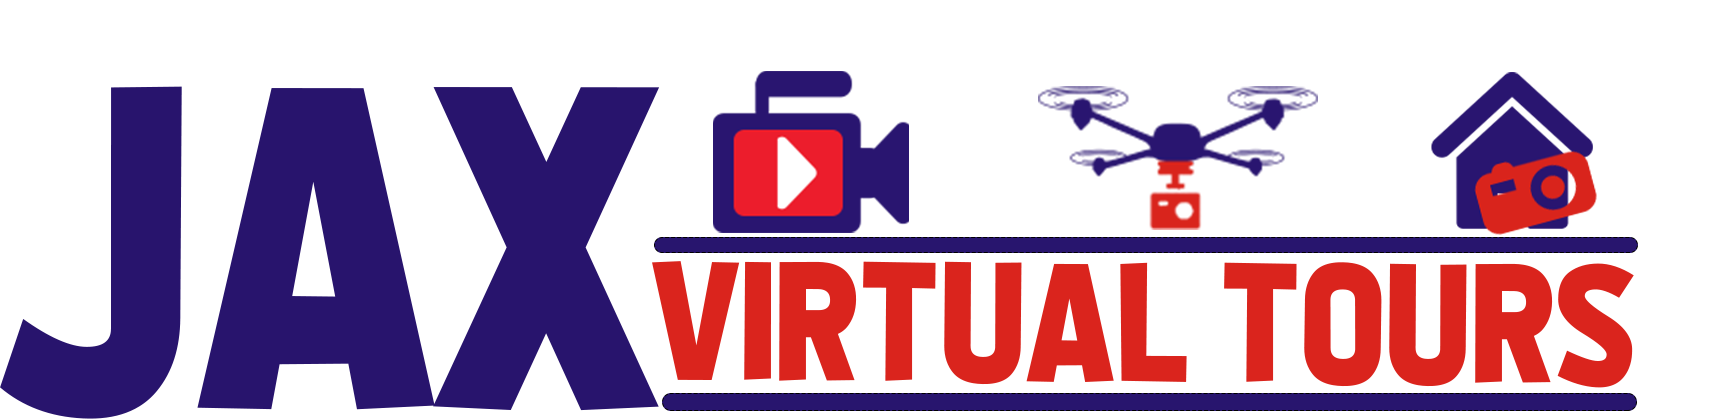 Jax Virtual Tours logo 